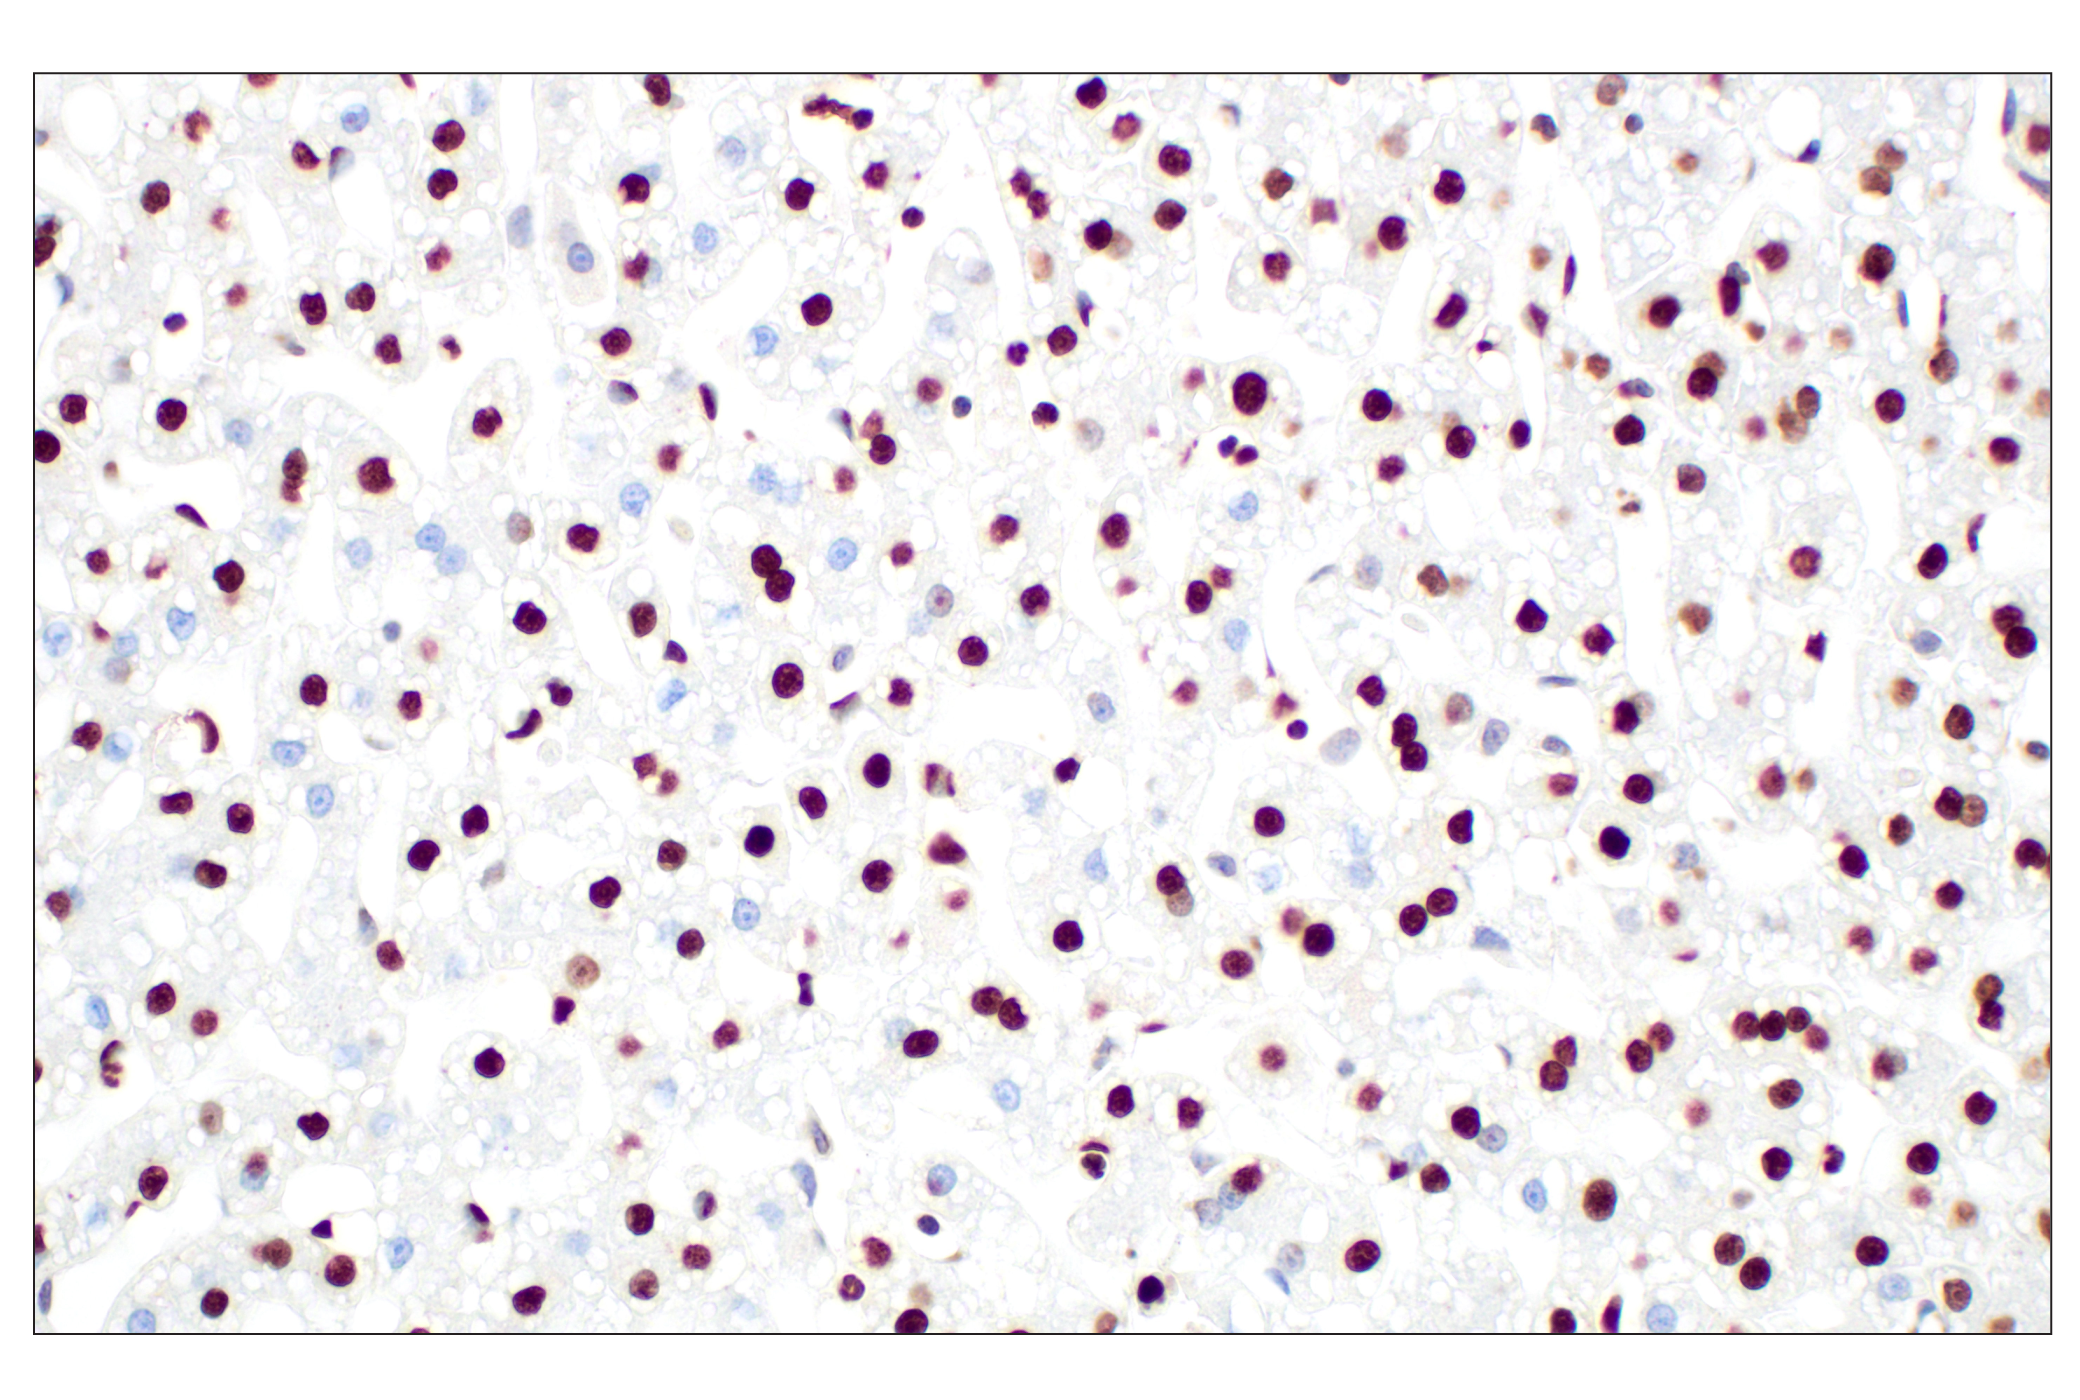  Image 36: Methyl-Histone H3 (Lys4) Antibody Sampler Kit